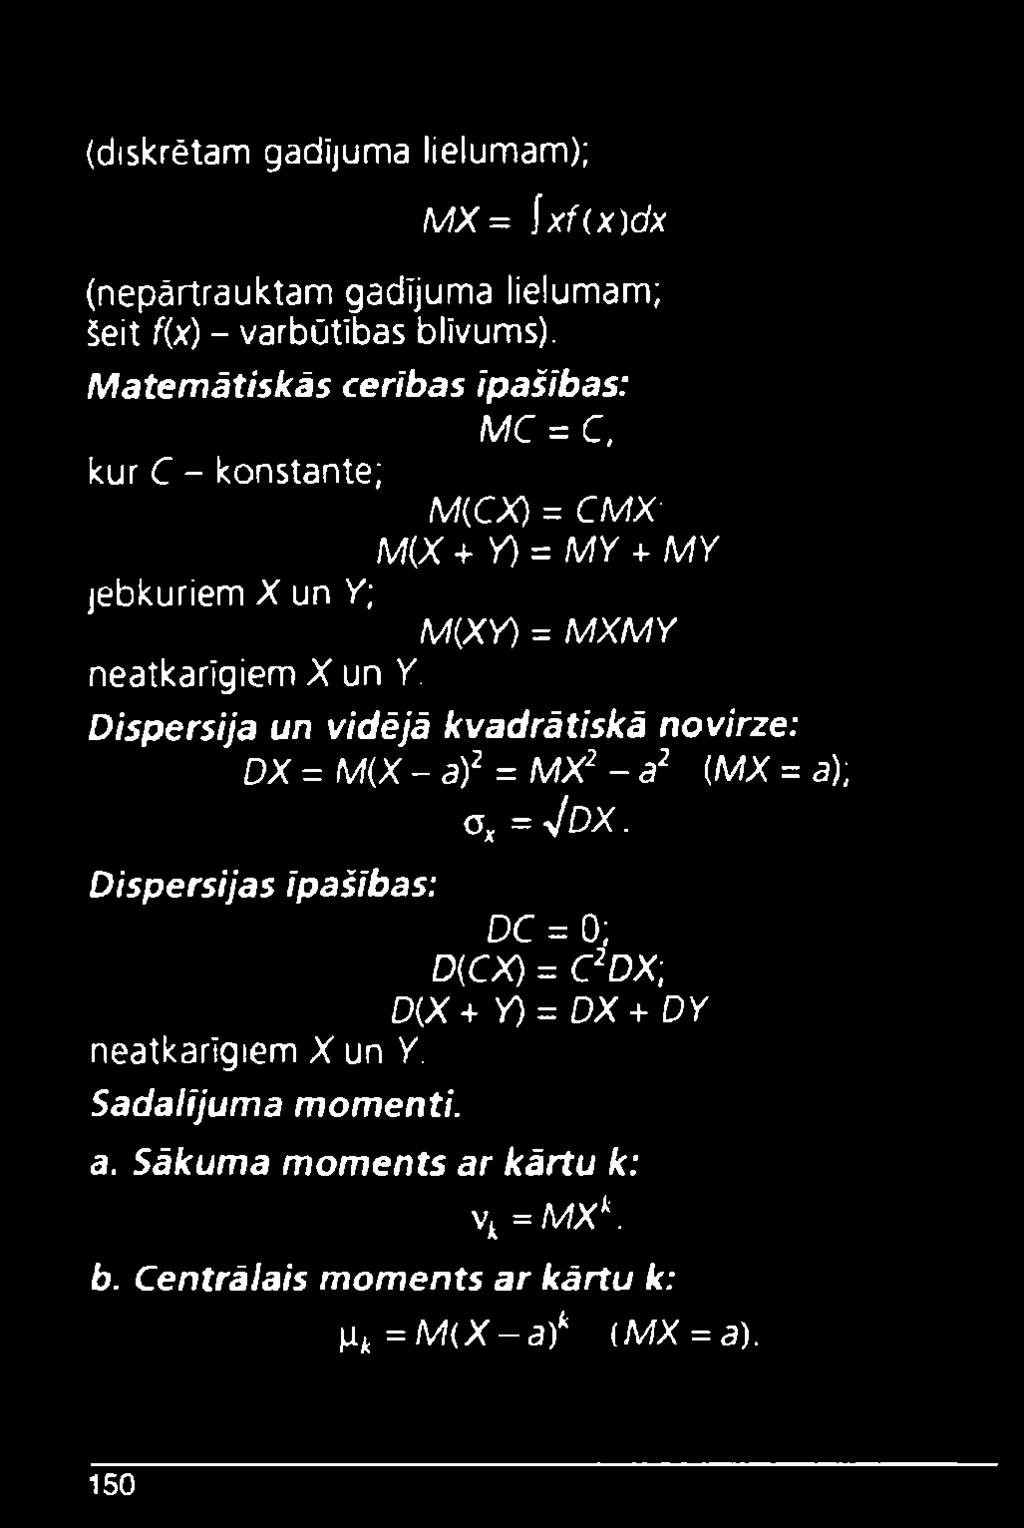 X un Y. Dispersija un vidējā kvadrātiskā novirze: DX = M(X - a)2= MX2- a2 (MX =a); o, = Vdx.